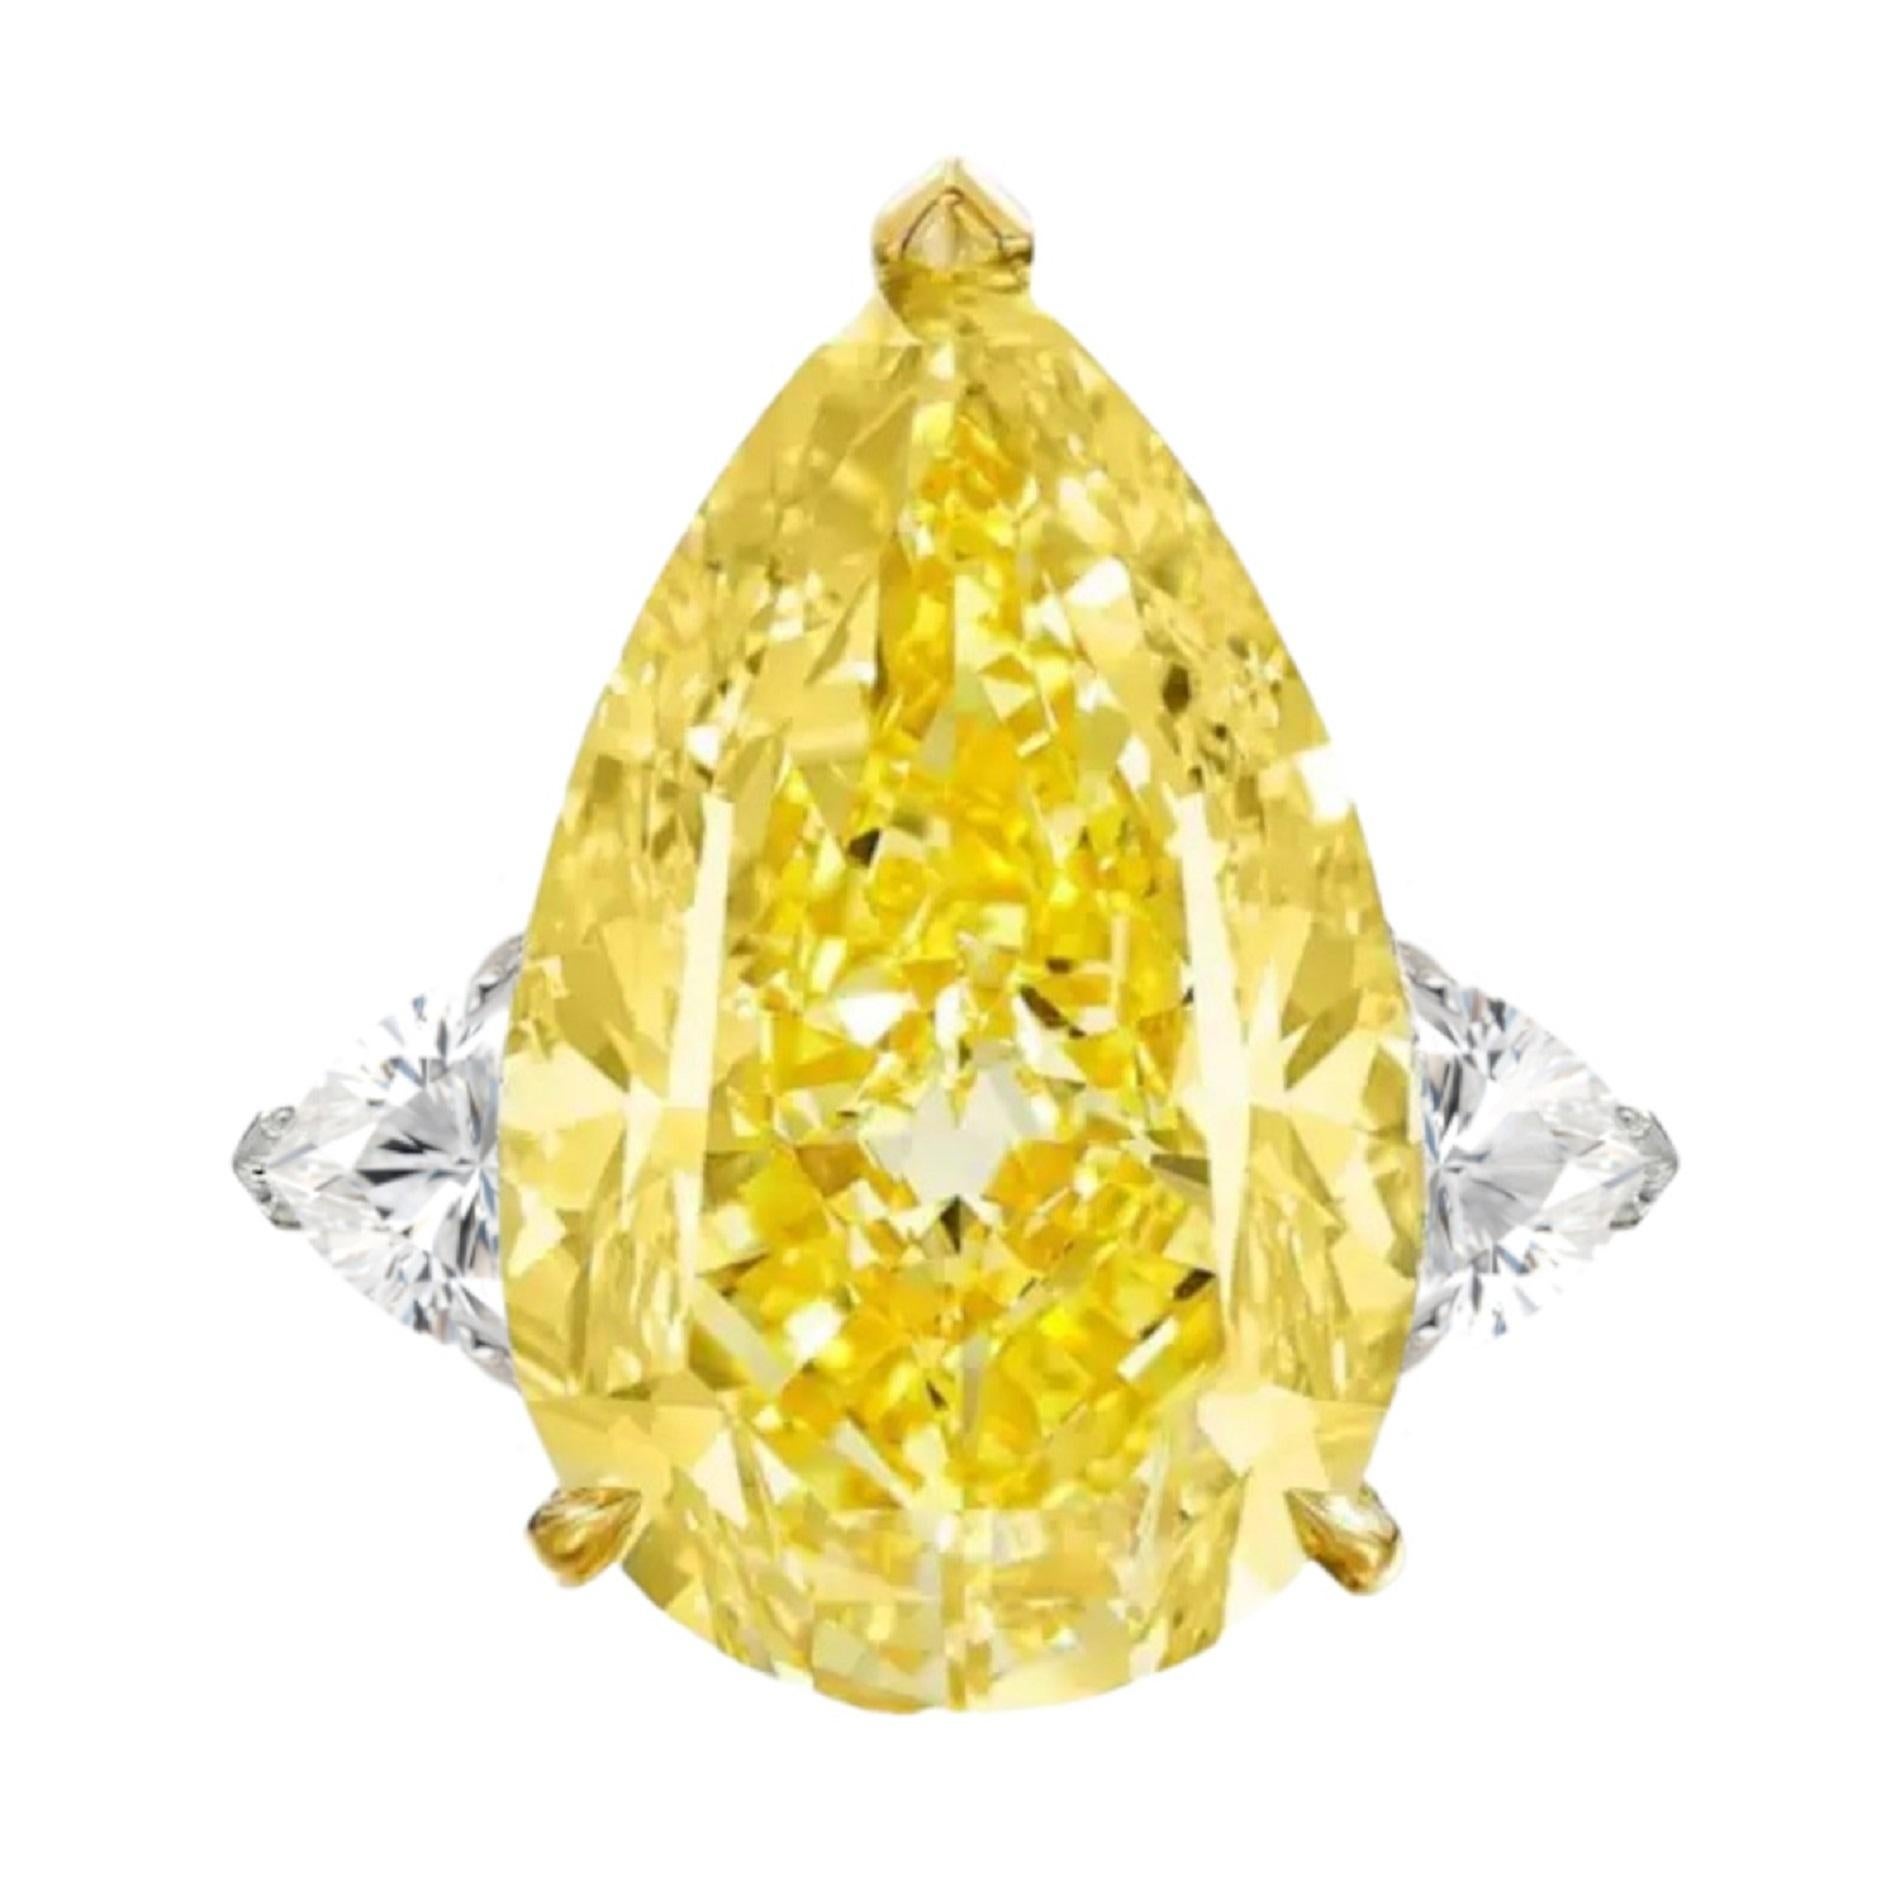 Bague exquise en diamant poire de 9,37 carats certifiée GIA 

serti de deux magnifiques diamants de taille trillion 

et serties en platine massif et en or jaune 18

l'anneau est redimensionnable

